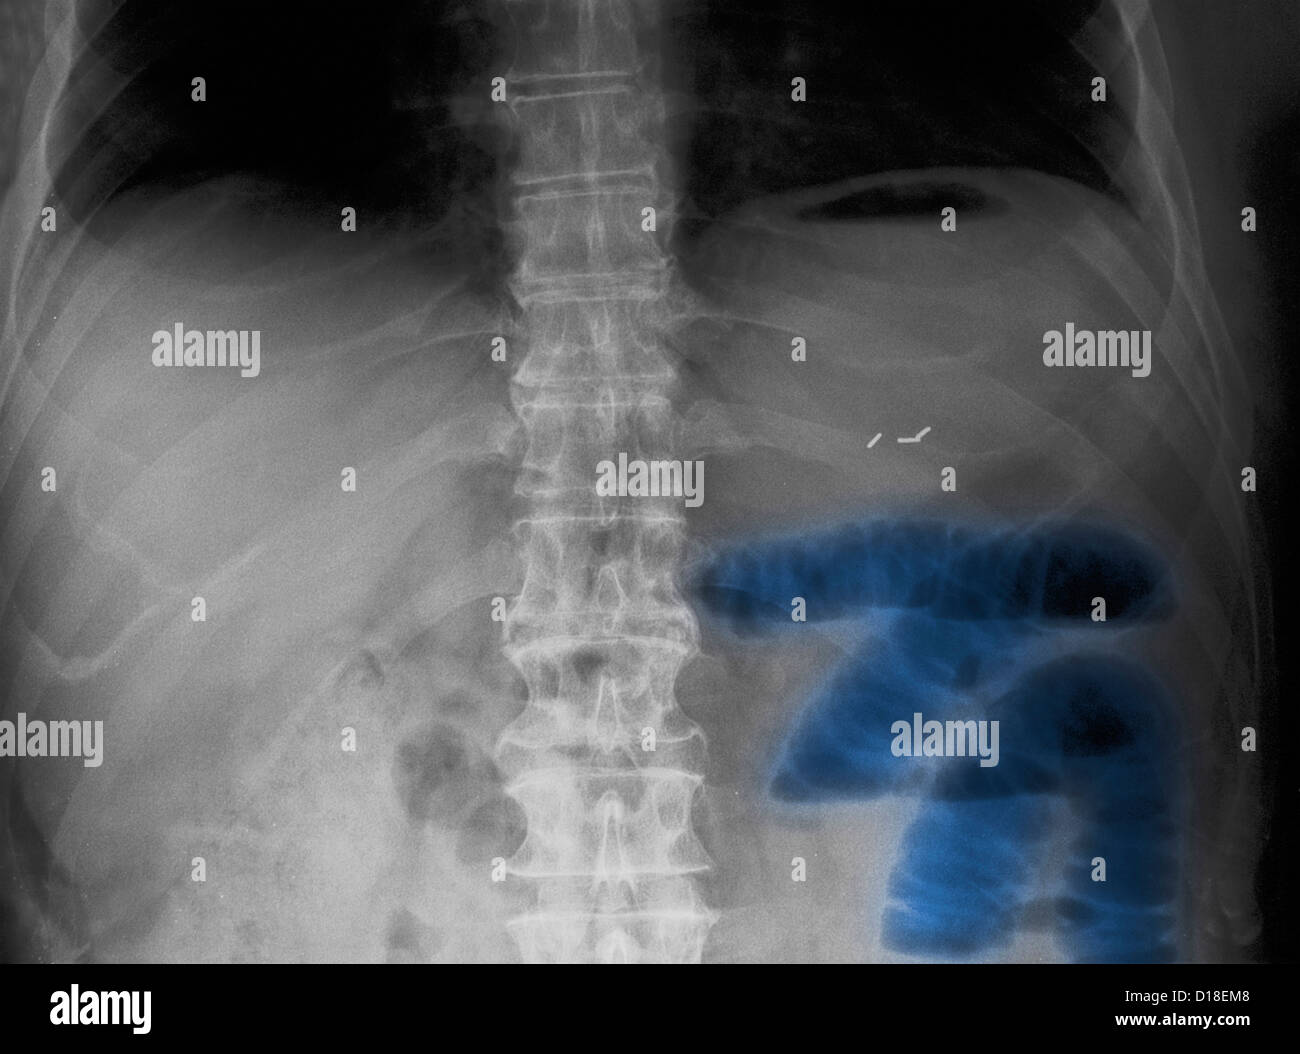 Abdominal X-ray, small bowel obstruction Stock Photo